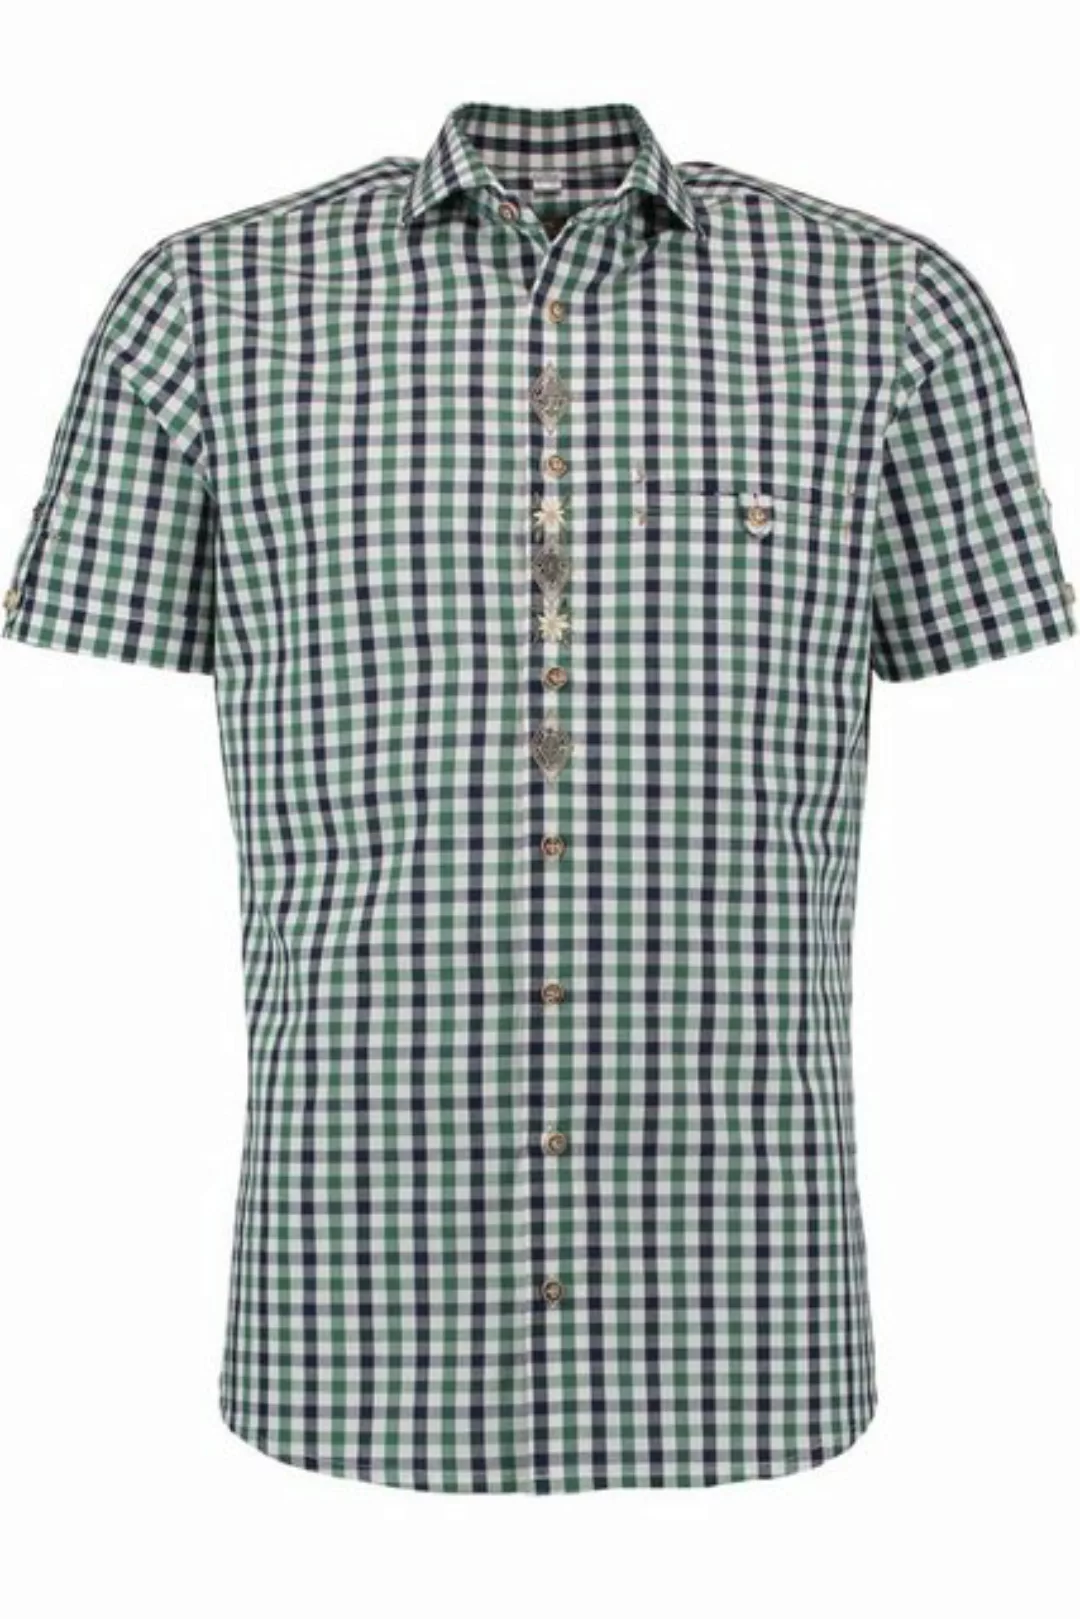 orbis Trachtenhemd Trachtenhemd - SAMIRO - tanne/navy günstig online kaufen